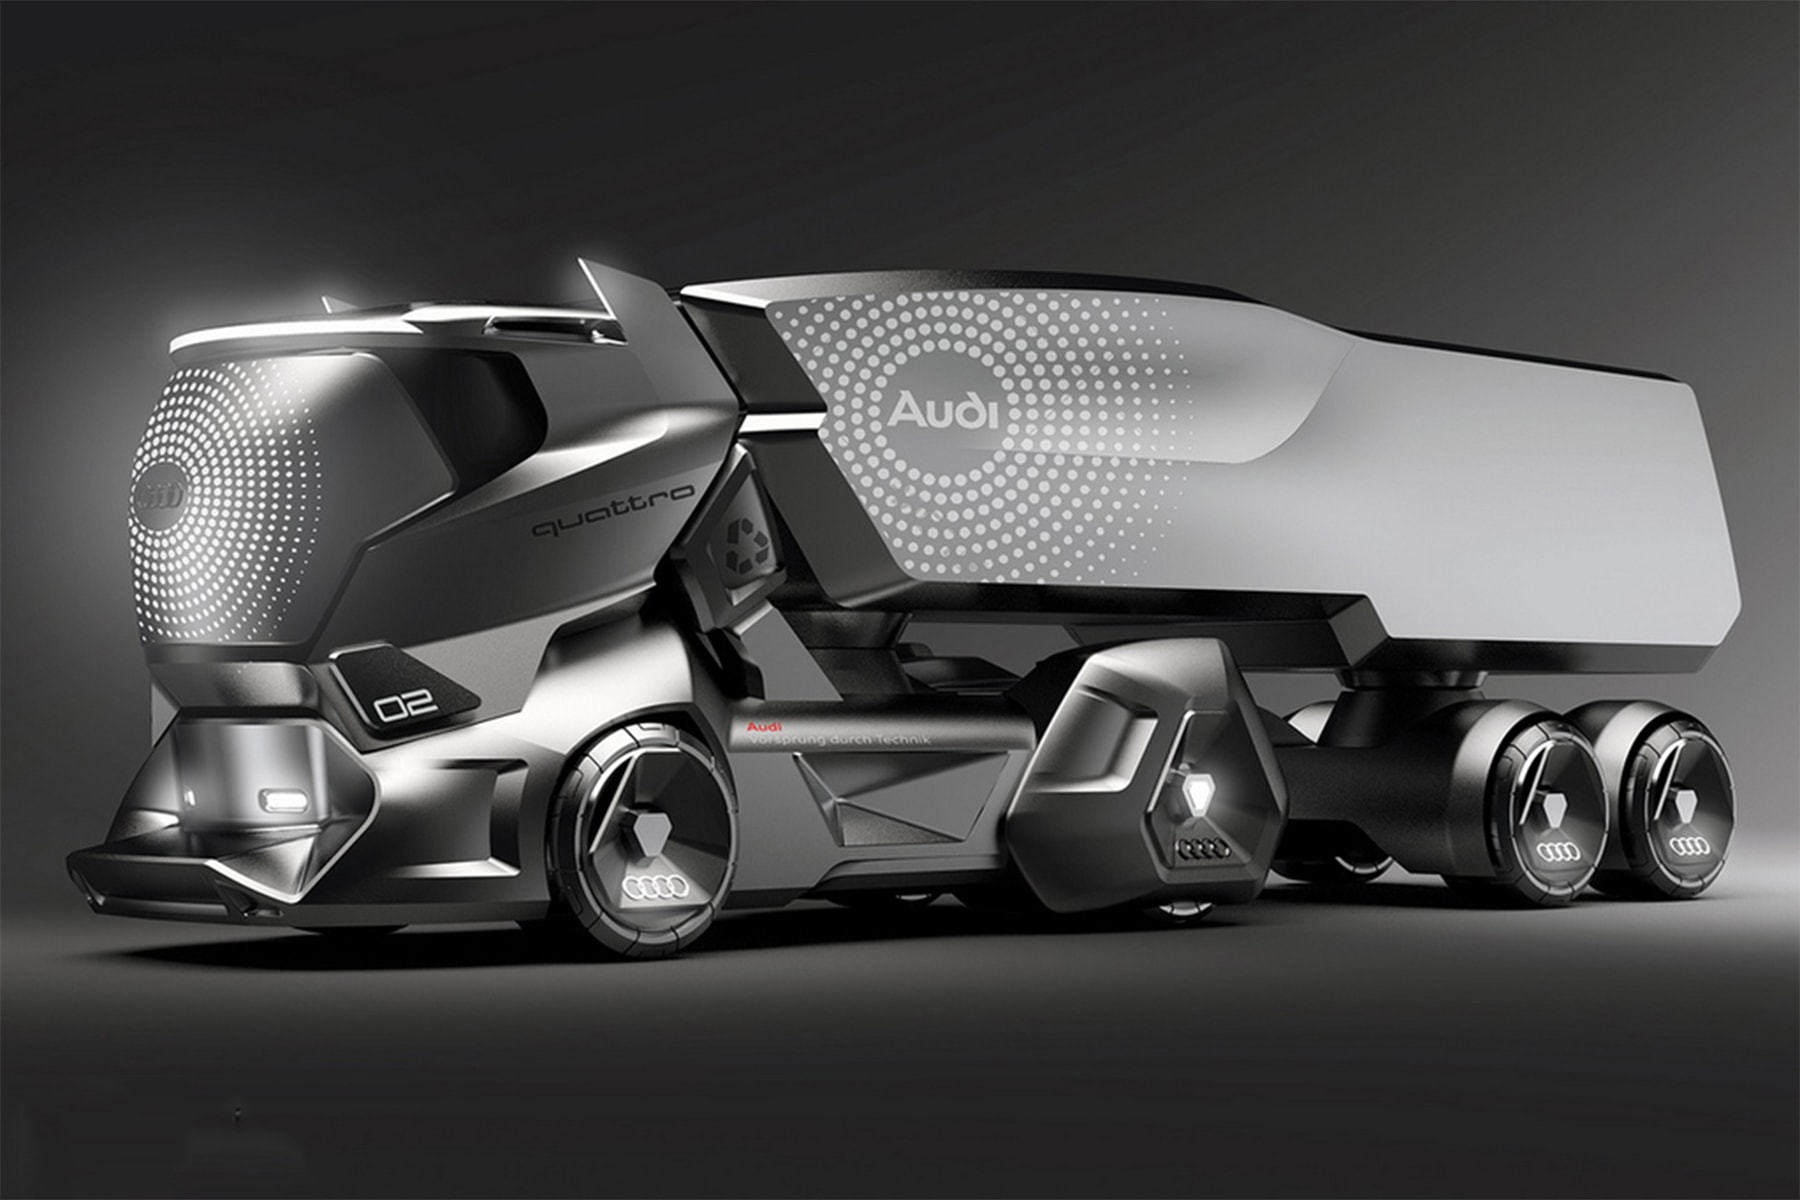 イギリス発の自動車デザイナーが Tesla Semi を上回る近未来的なトラックをデザイン 「Audi」をテーマに空想の世界で創り上げた“何とも意味のない1台”が完成 EVトラック Tesla Semi Tesla テスラ Audi アウディ Jeremy Dodd ジェレミー・ドッド アンオフィシャル 非公式 Mercedes-Benz メルセデス・ベンツ ラグジュアリーカー TOP5 HYPEBEAST ハイプビースト